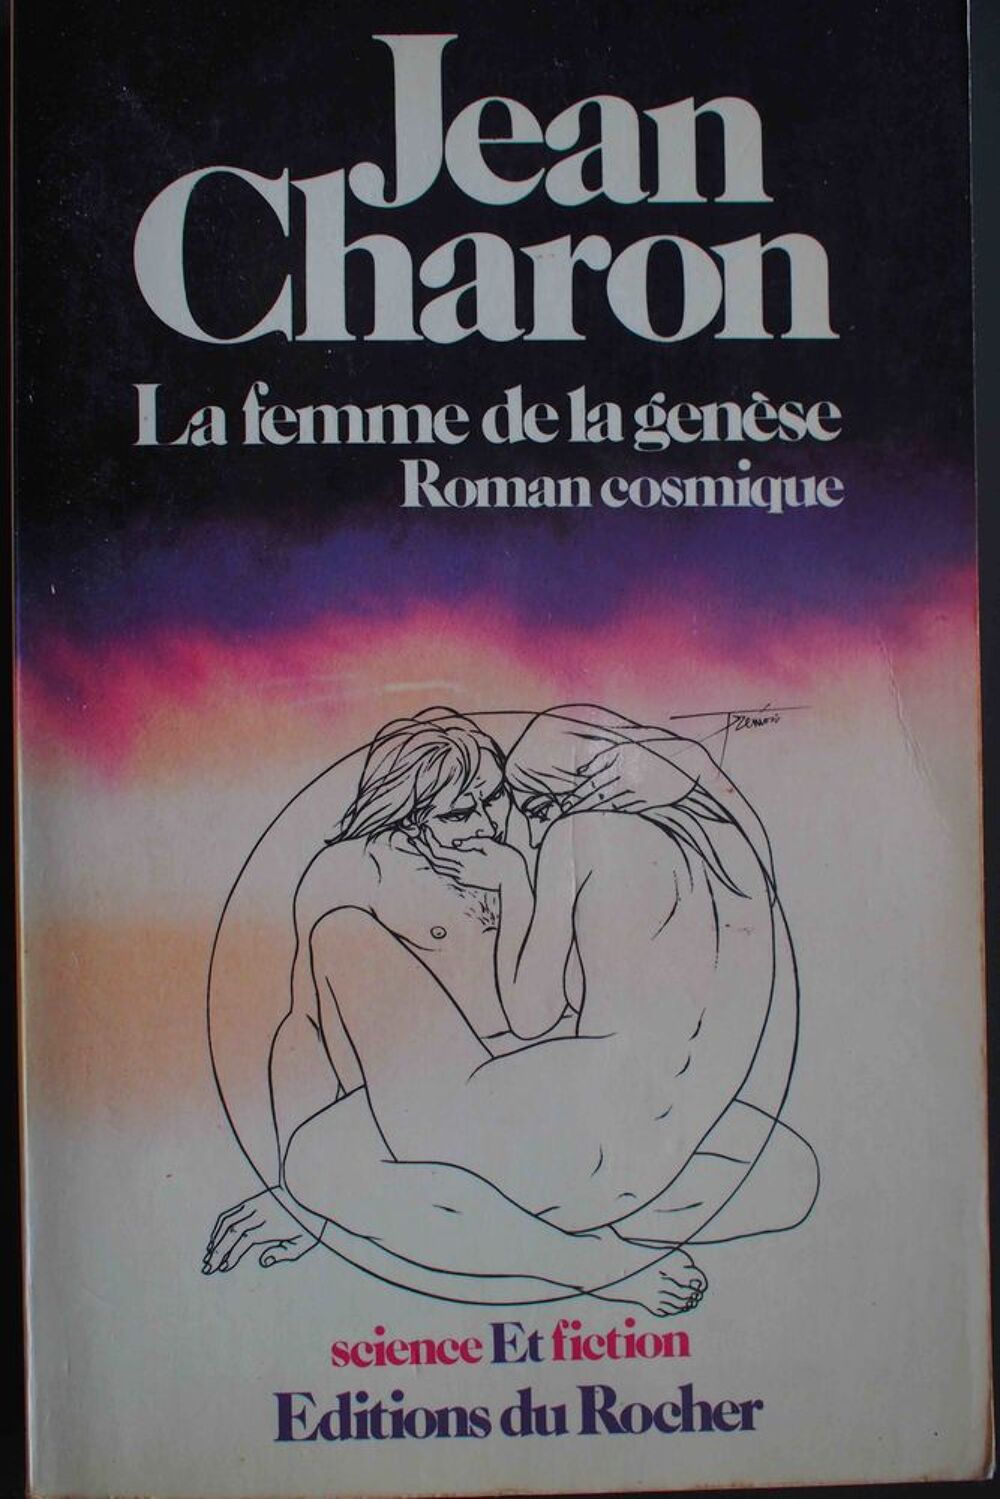 LA FEMME DE LA GENESE - Jean Charon, Livres et BD